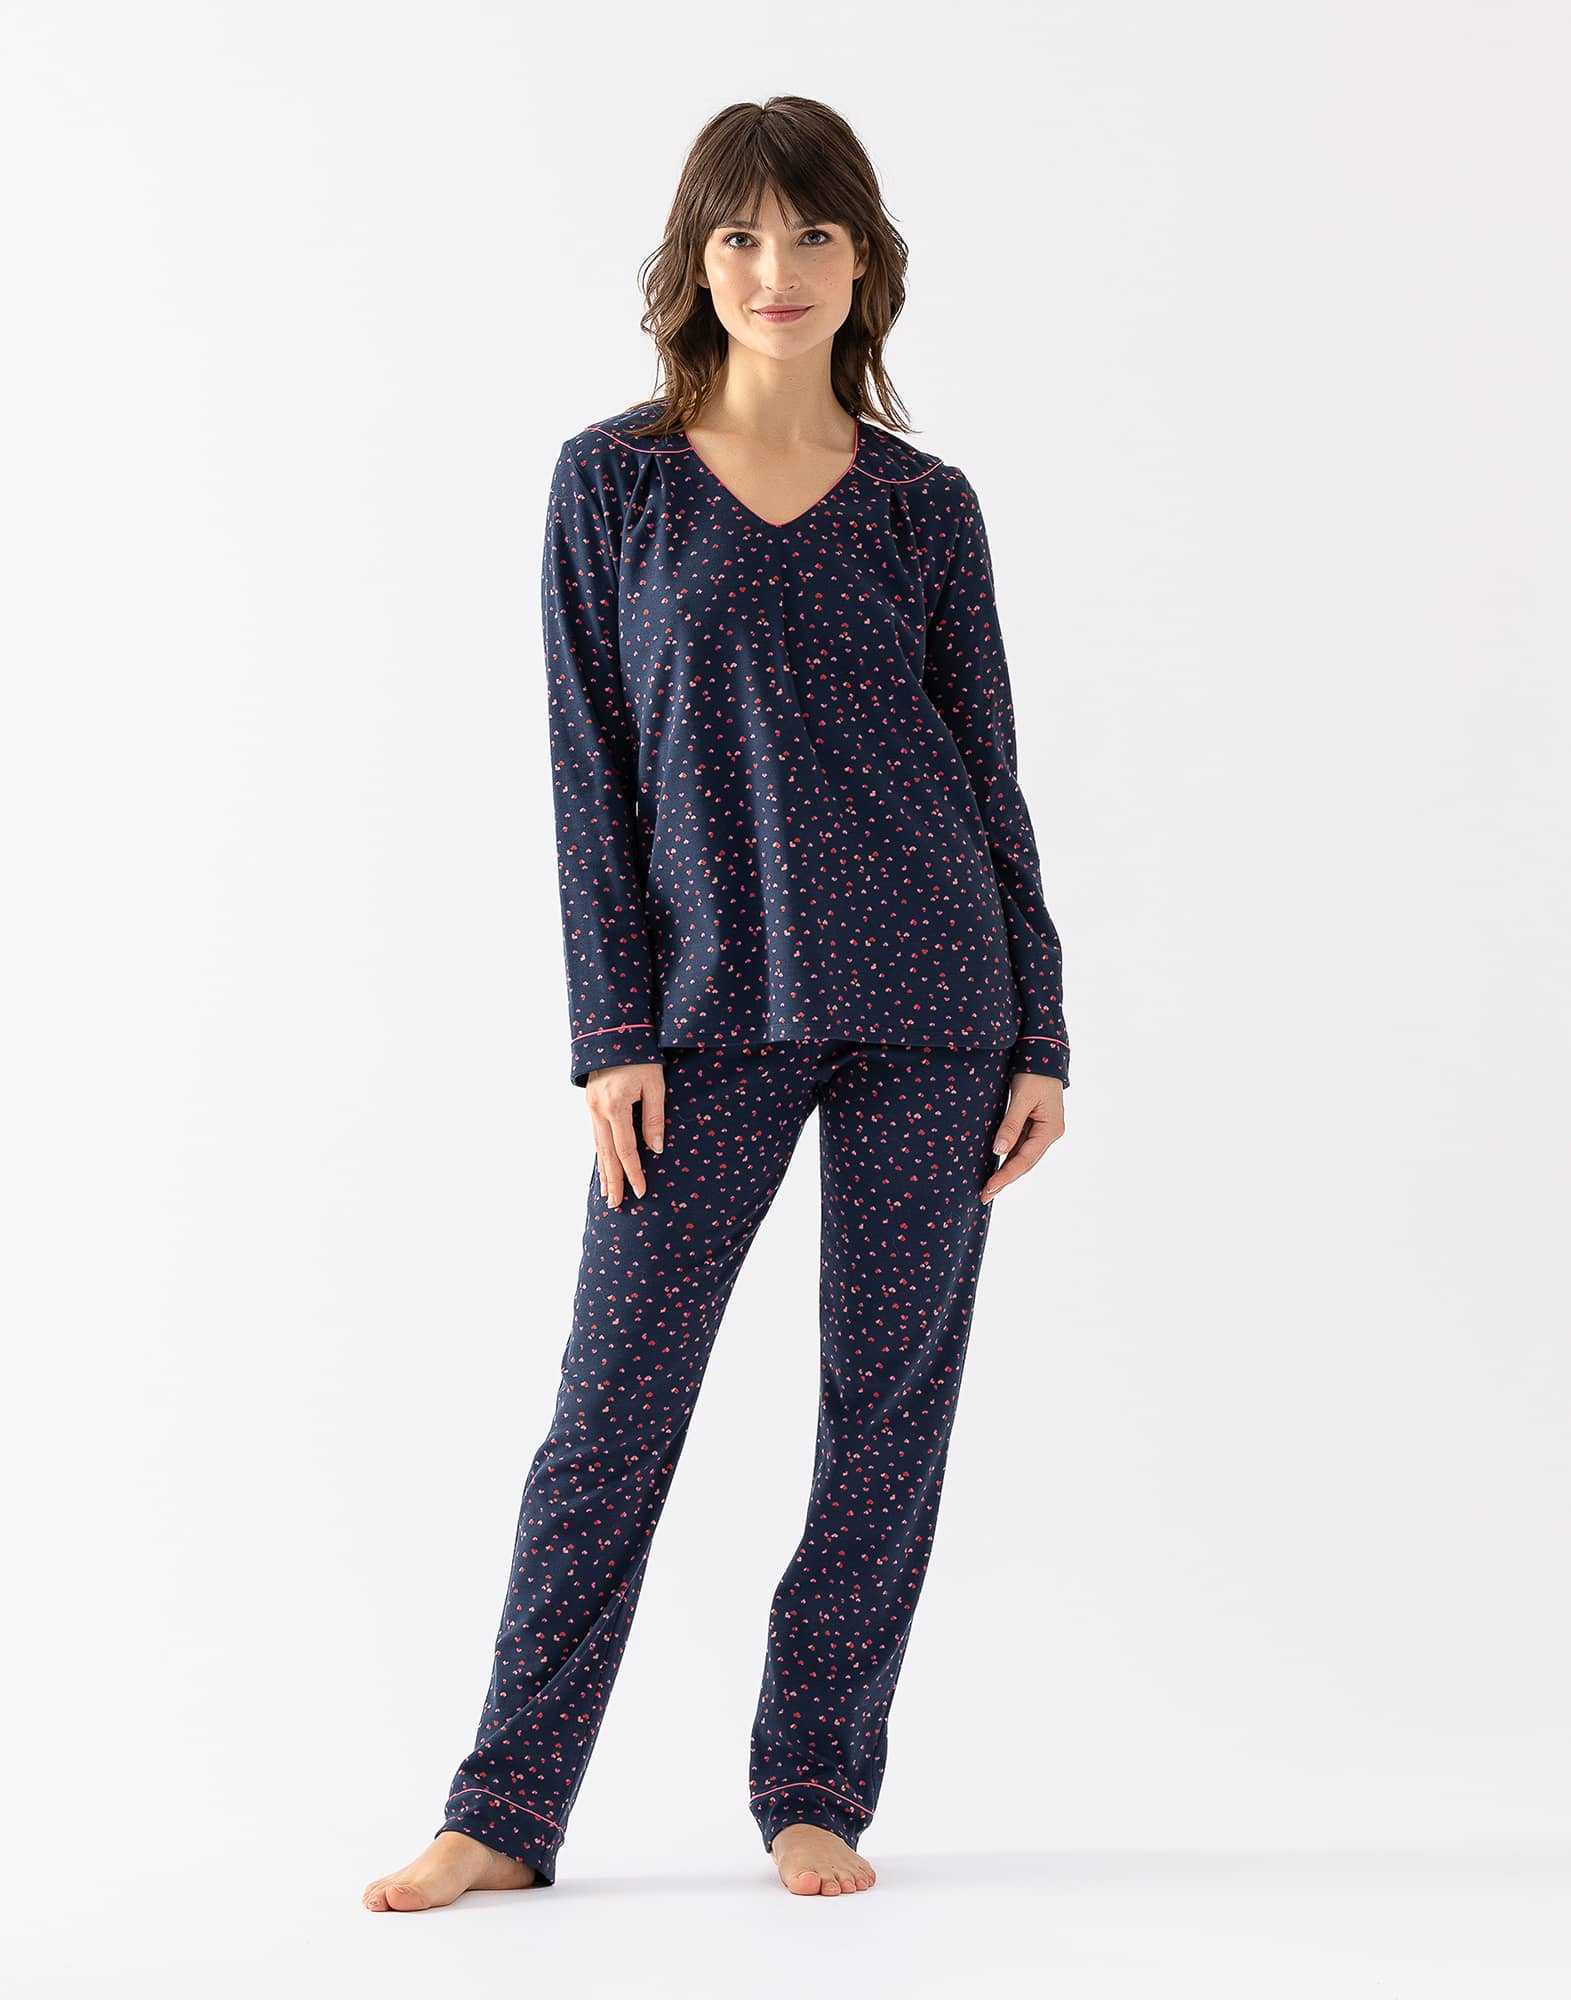 100% cotton interlock pyjamas HOLLY 602 navy blue